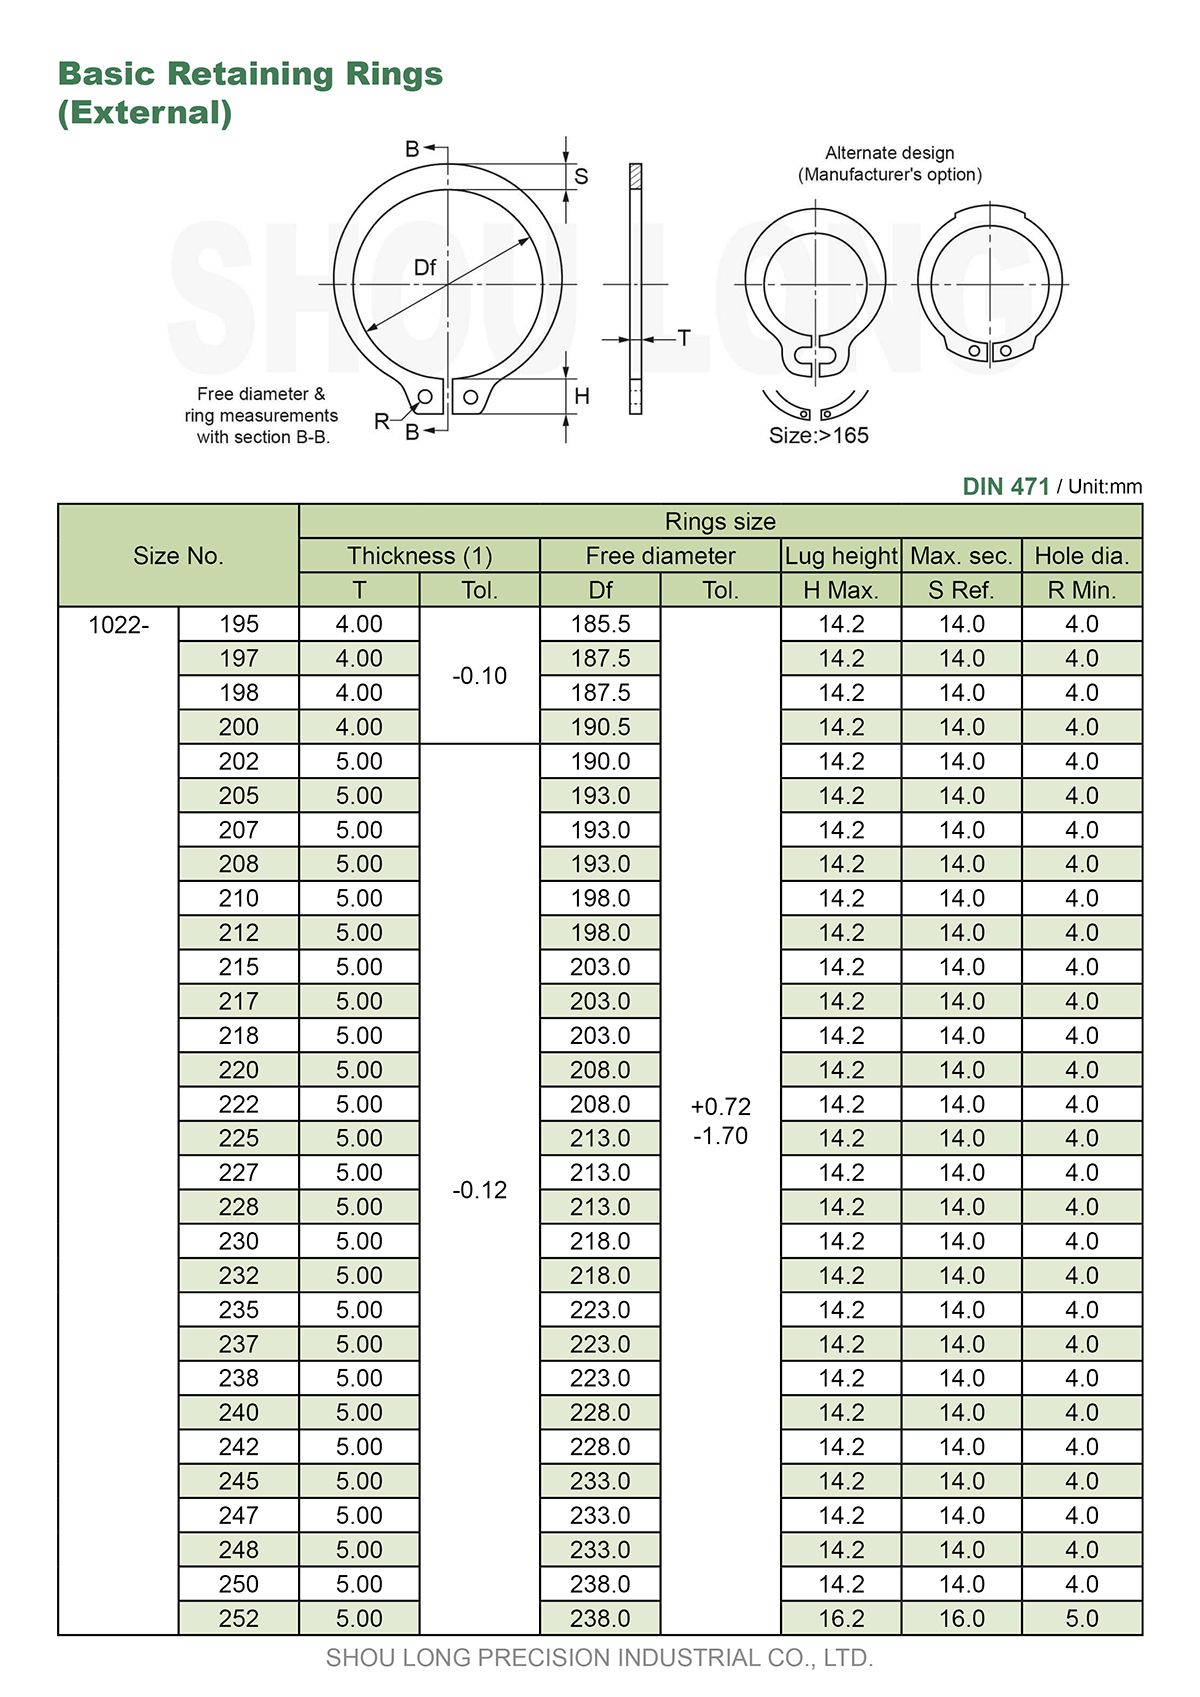 مواصفات حلقات الاحتفاظ الأساسية بالمقاسات المترية للعمود DIN471-5